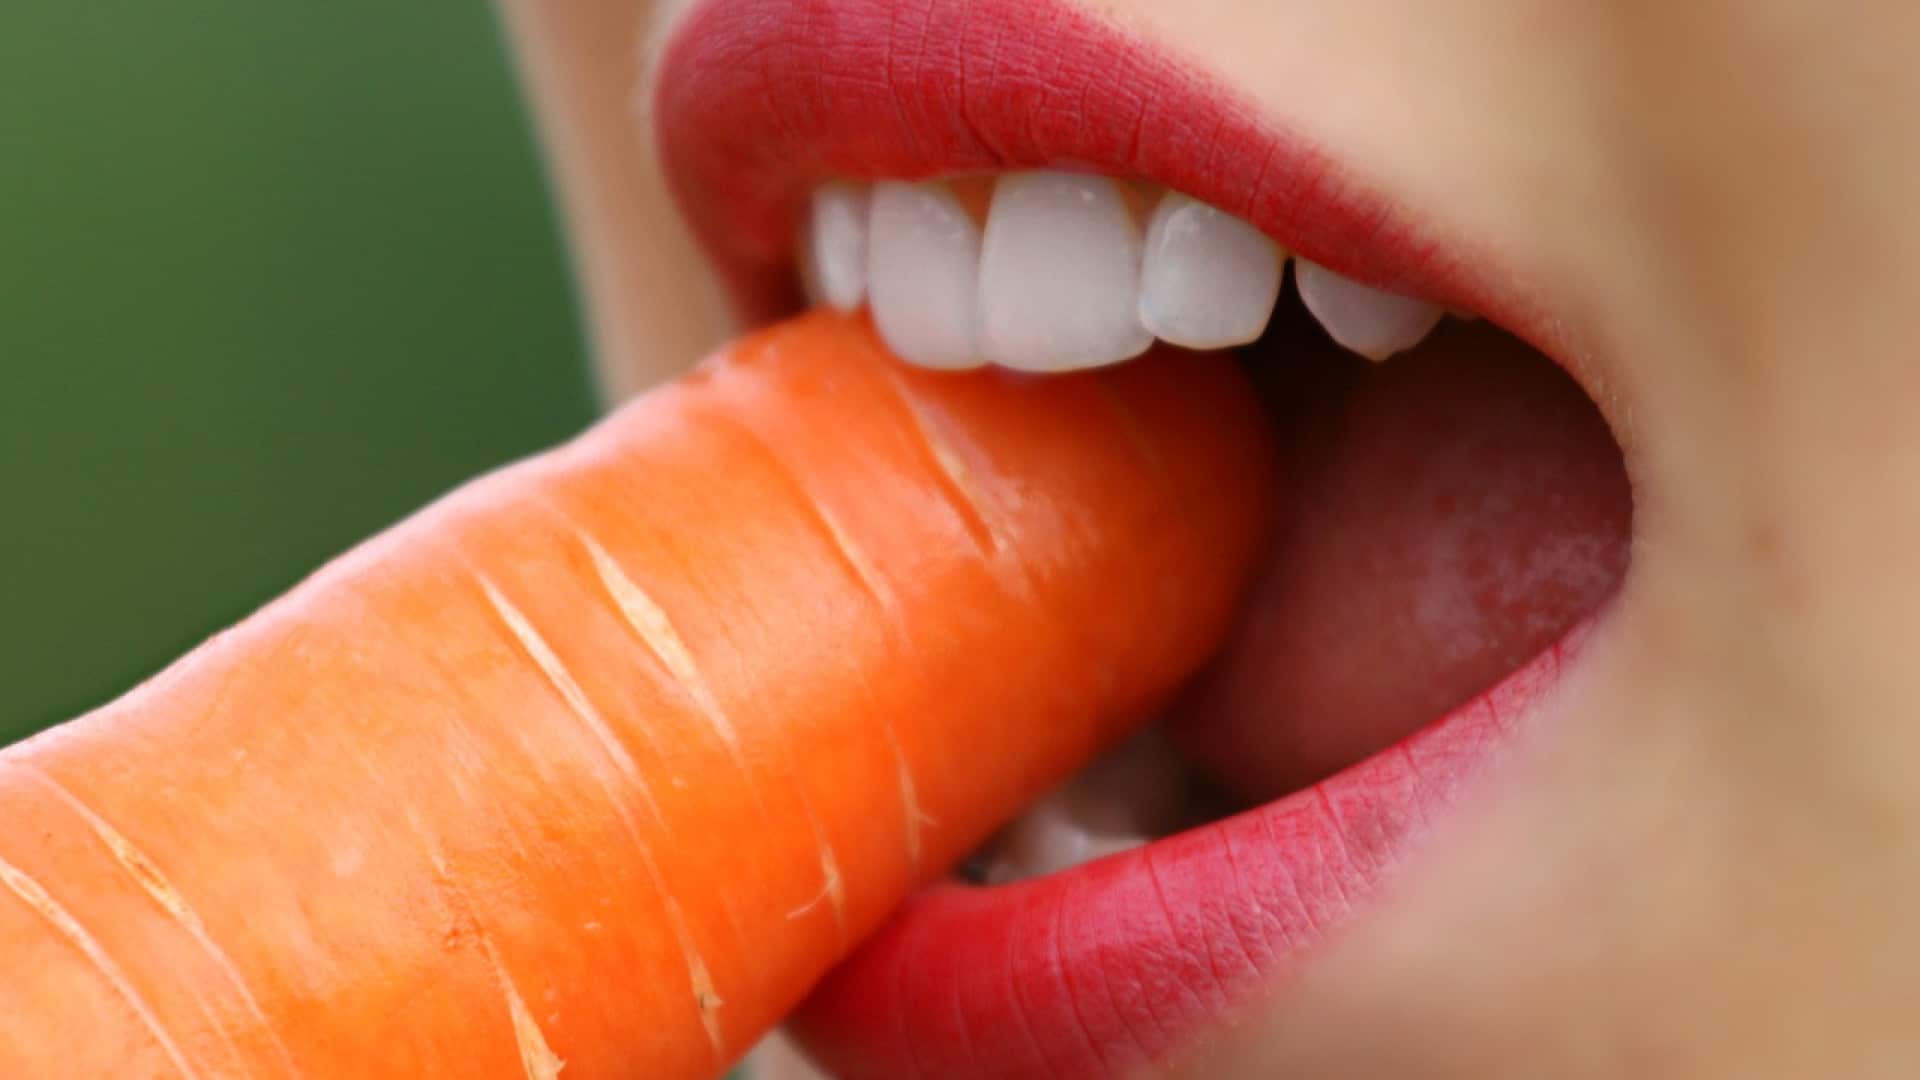 Gros plan d'une personne mordant dans une carotte, affichant un sourire radieux.